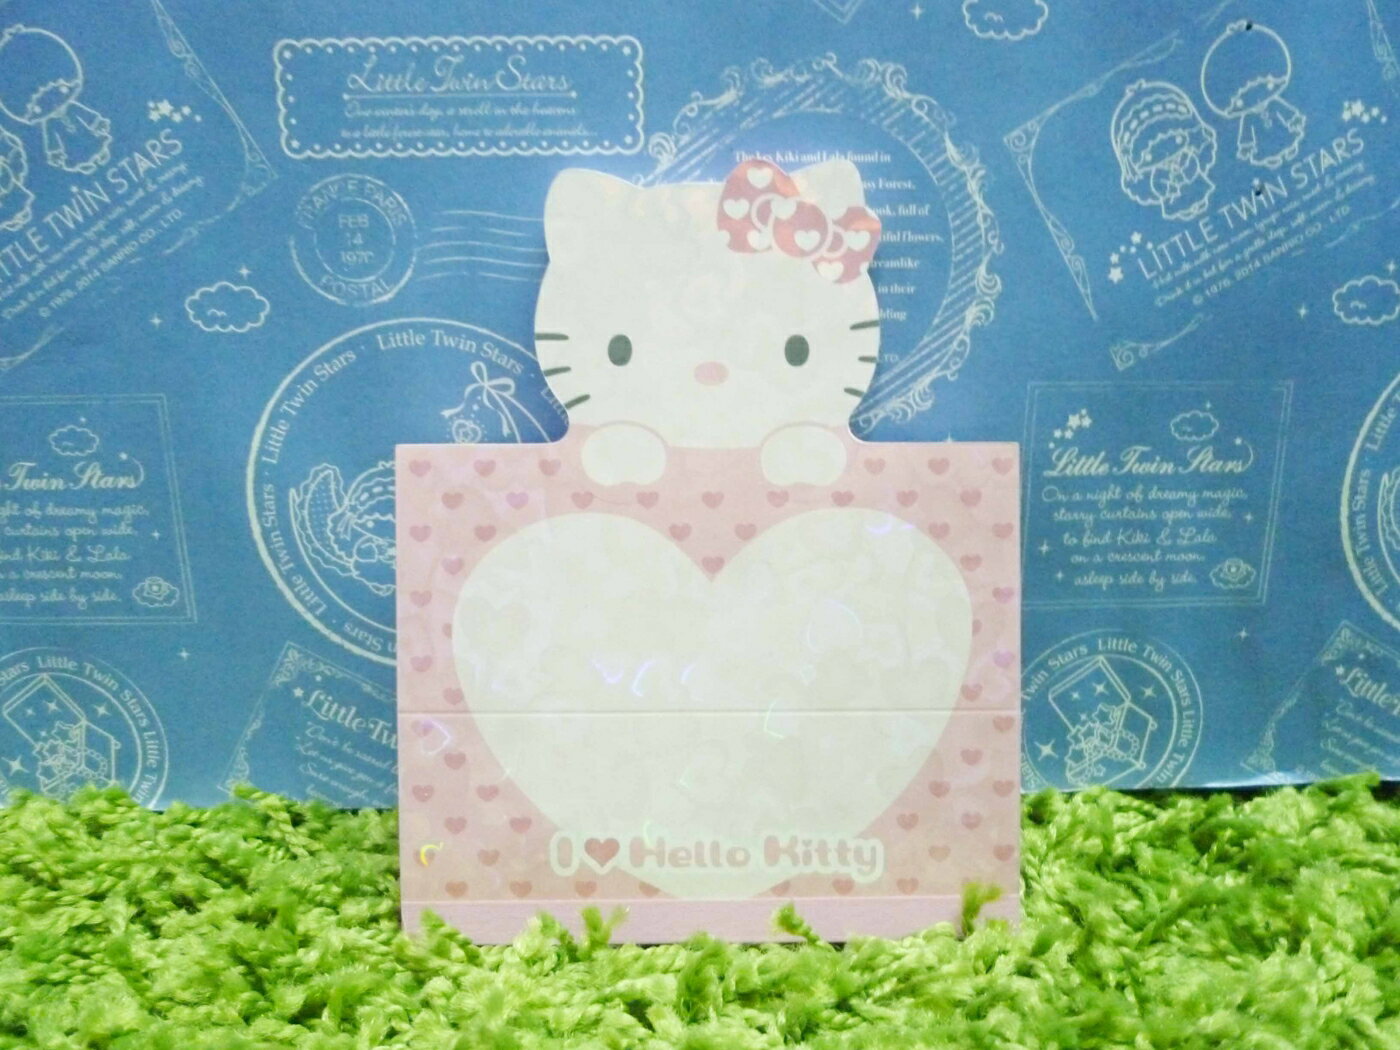 【震撼精品百貨】Hello Kitty 凱蒂貓 造型便條紙-粉臉造型-粉紅色【共1款】 震撼日式精品百貨